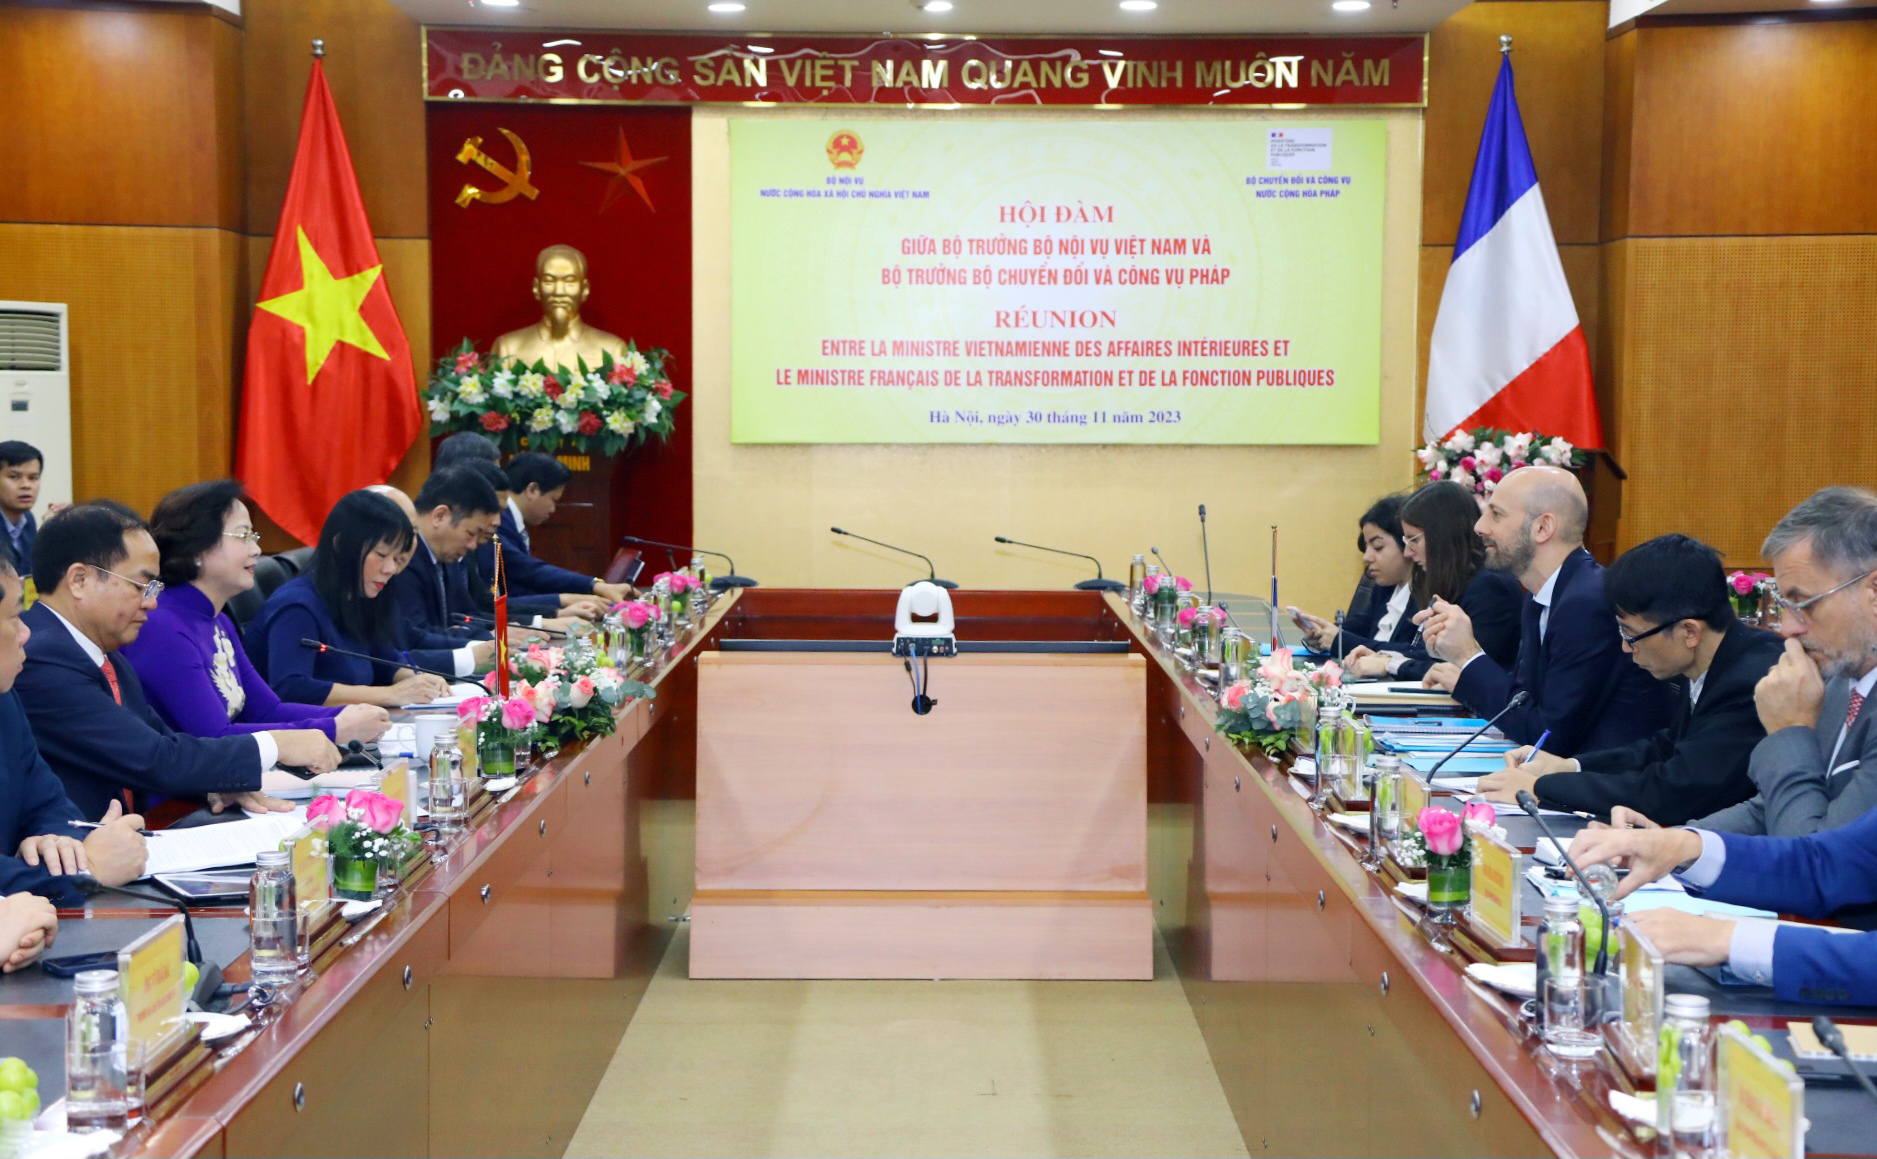 Hội đàm giữa Bộ trưởng Bộ Nội vụ Việt Nam và Bộ trưởng Bộ Chuyển đổi và Công vụ Pháp